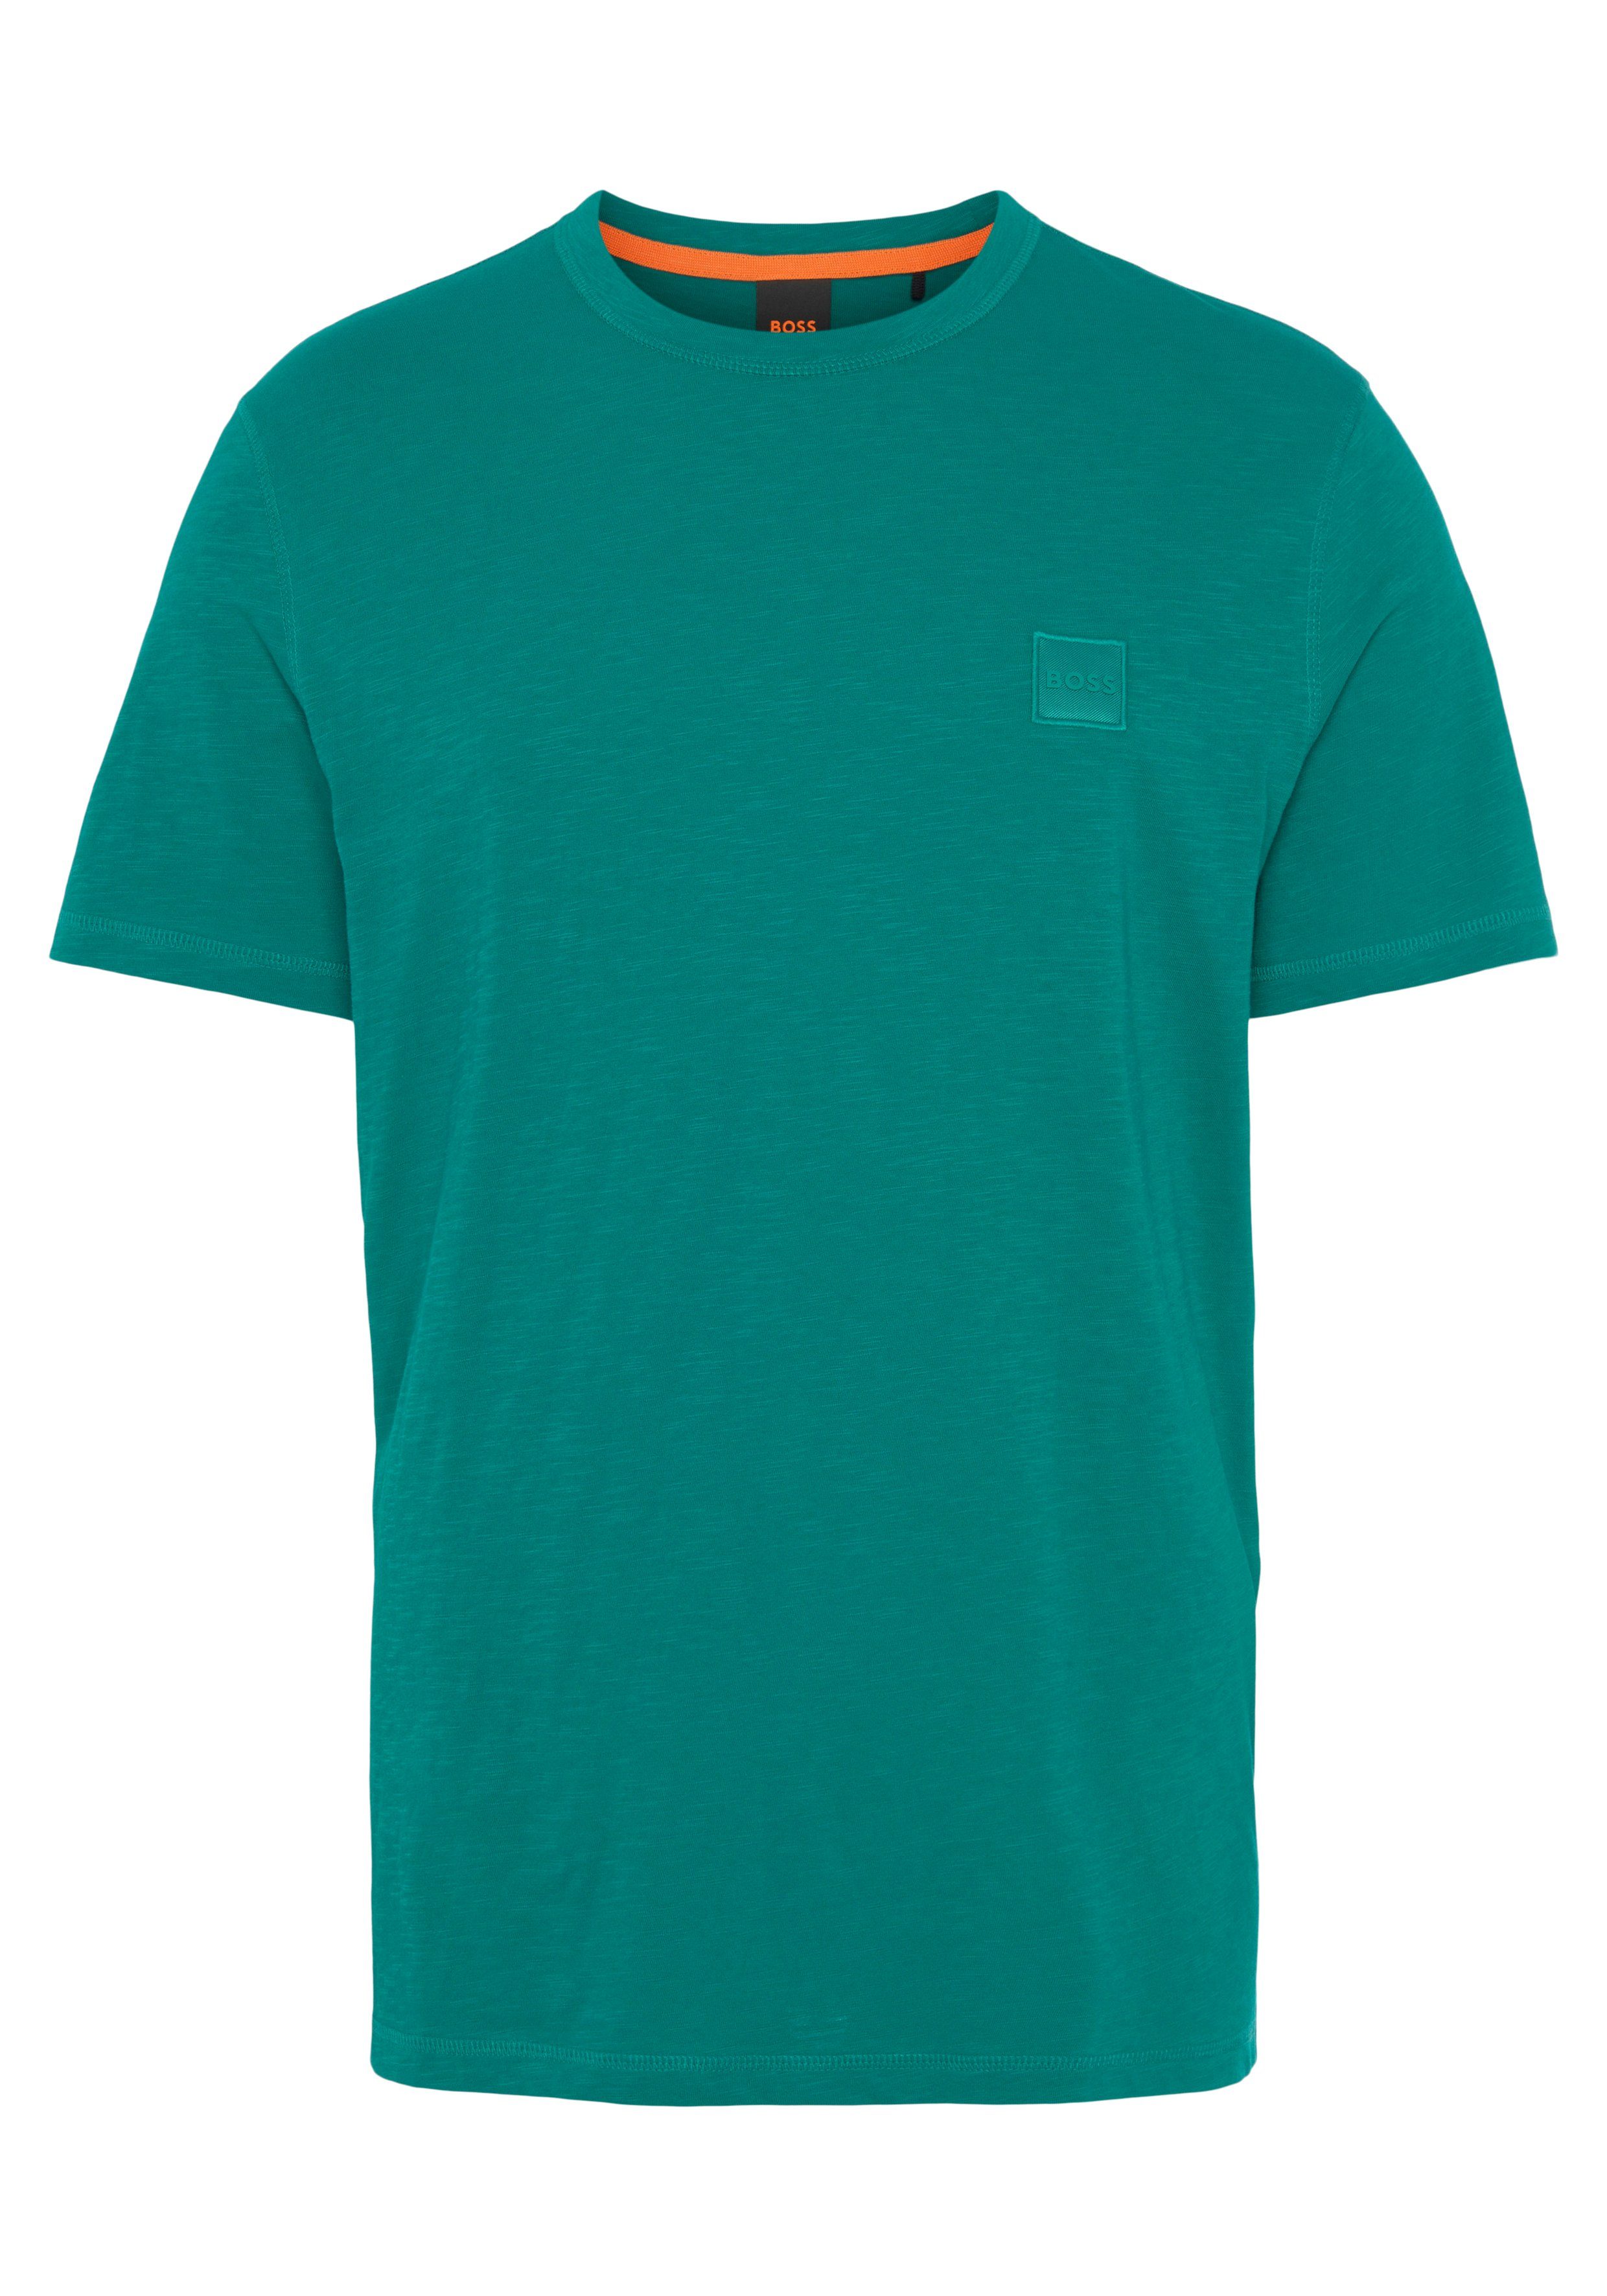 der BOSS T-Shirt Dark Tegood auf ORANGE BOSS Brust mit Green303 Logo